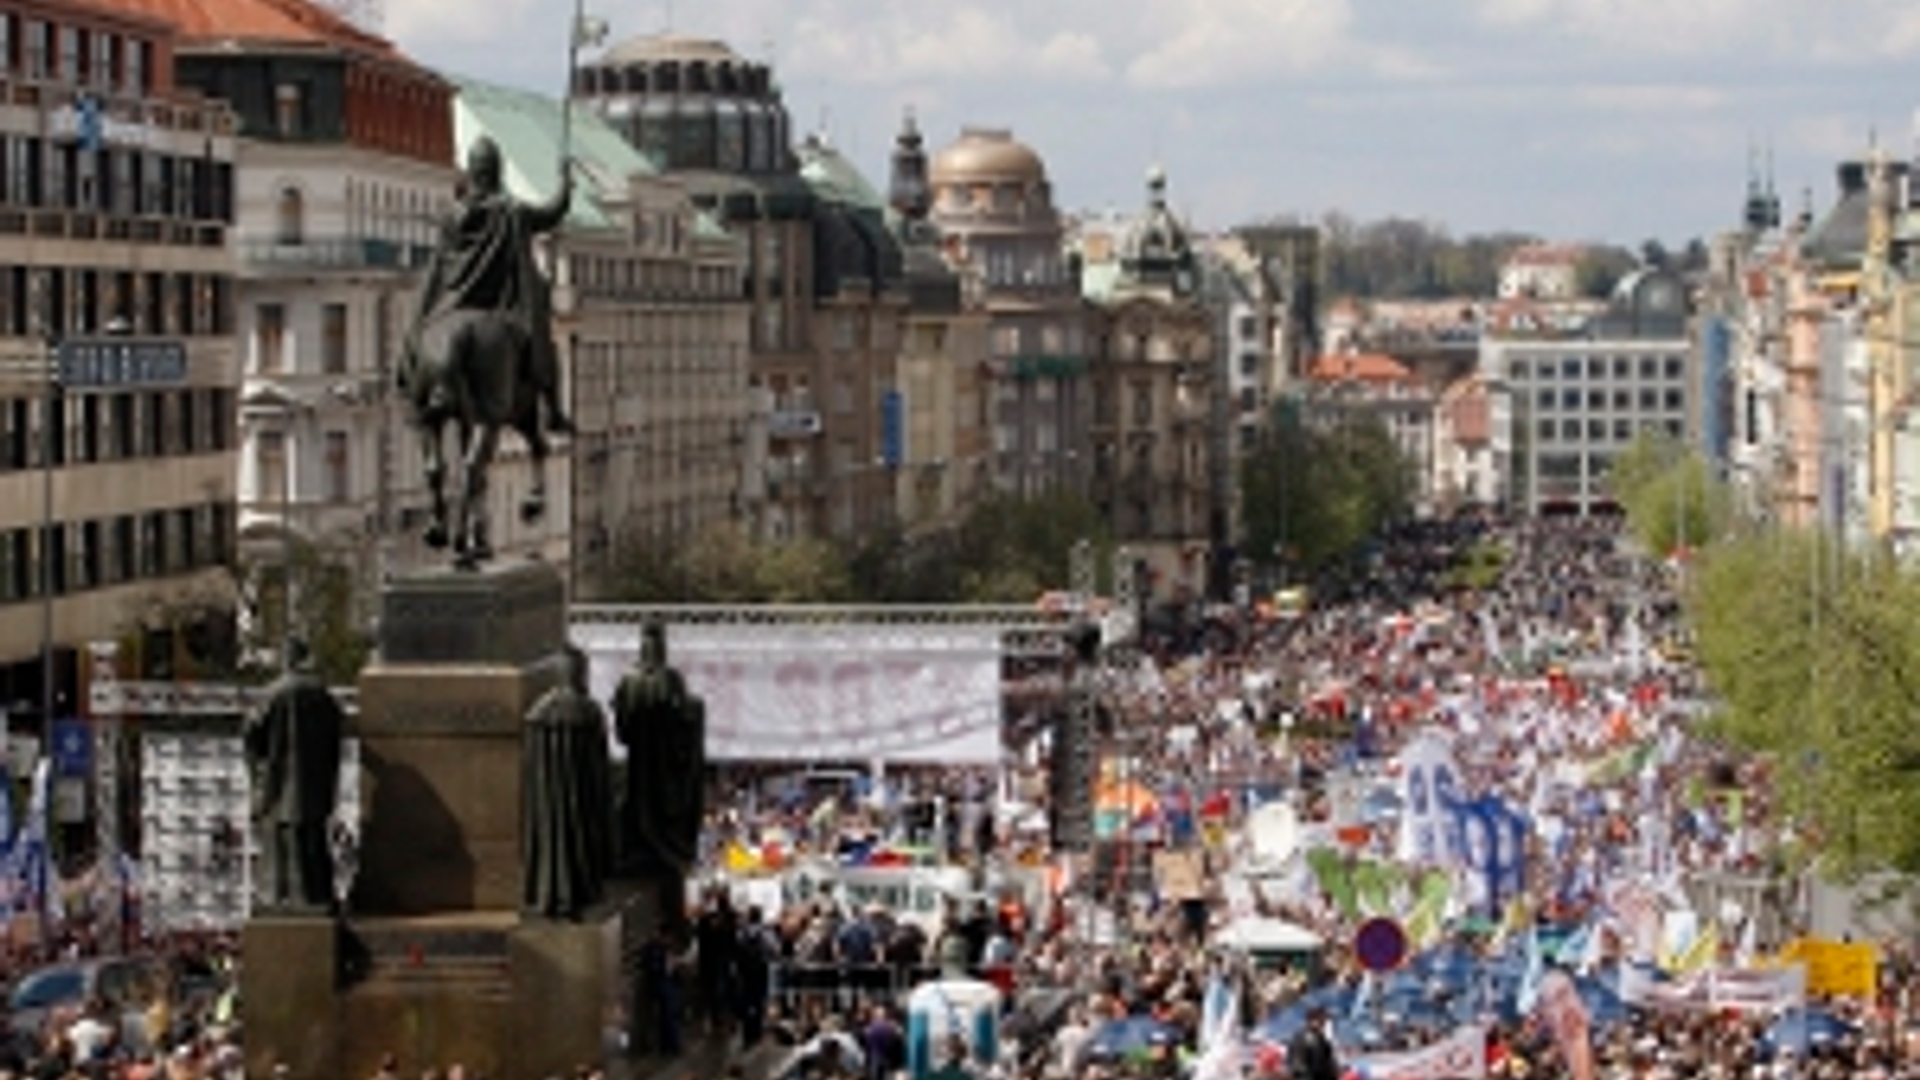 ANP-Tsjechië_protest300.jpg